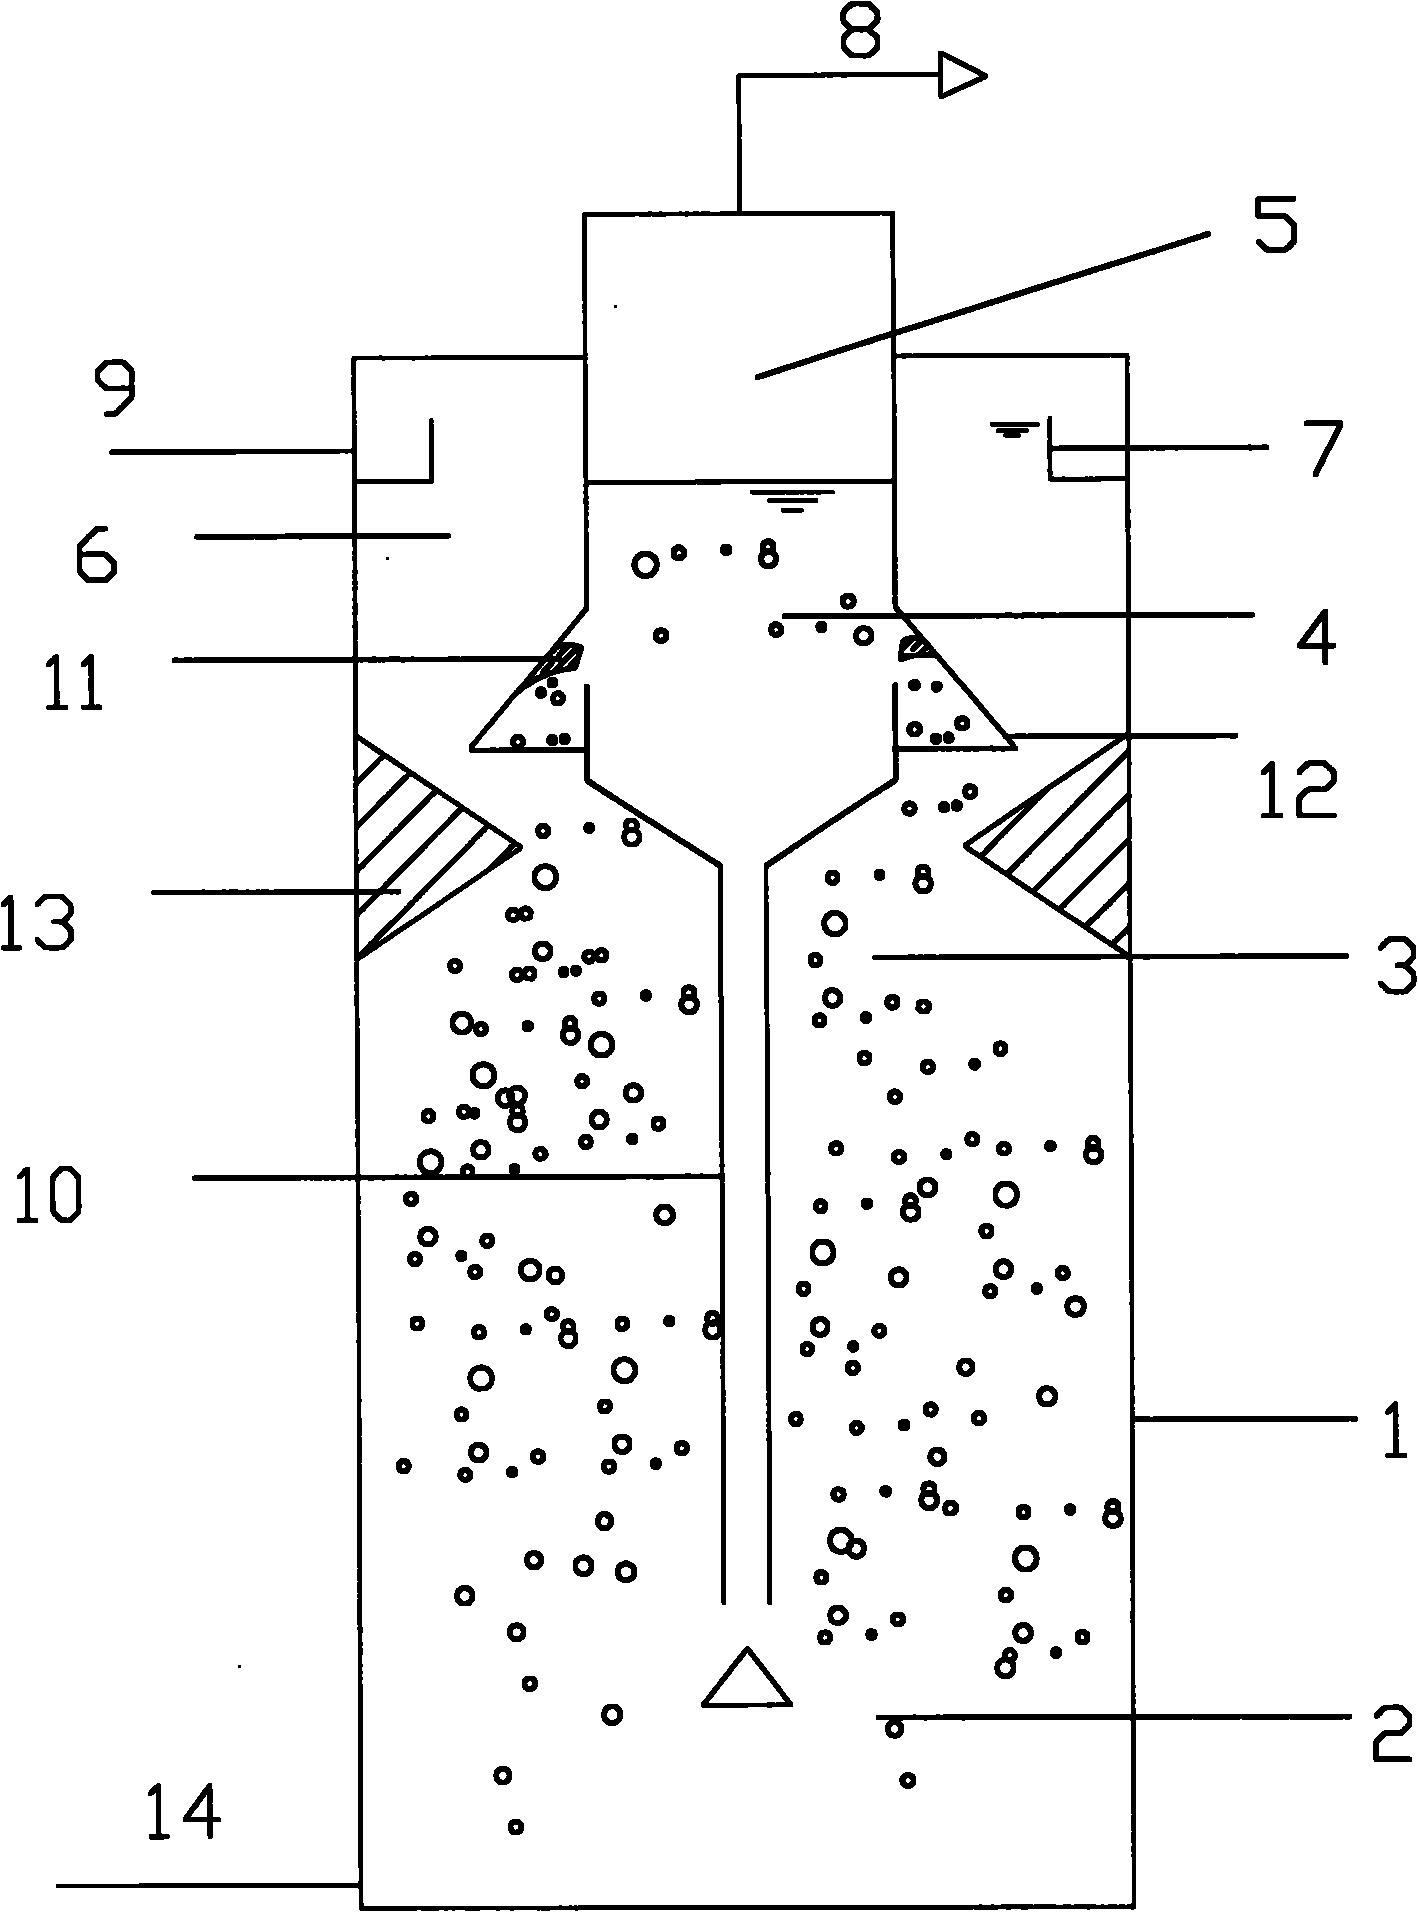 Internal circulation upflow anaerobic sludge blanket reactor